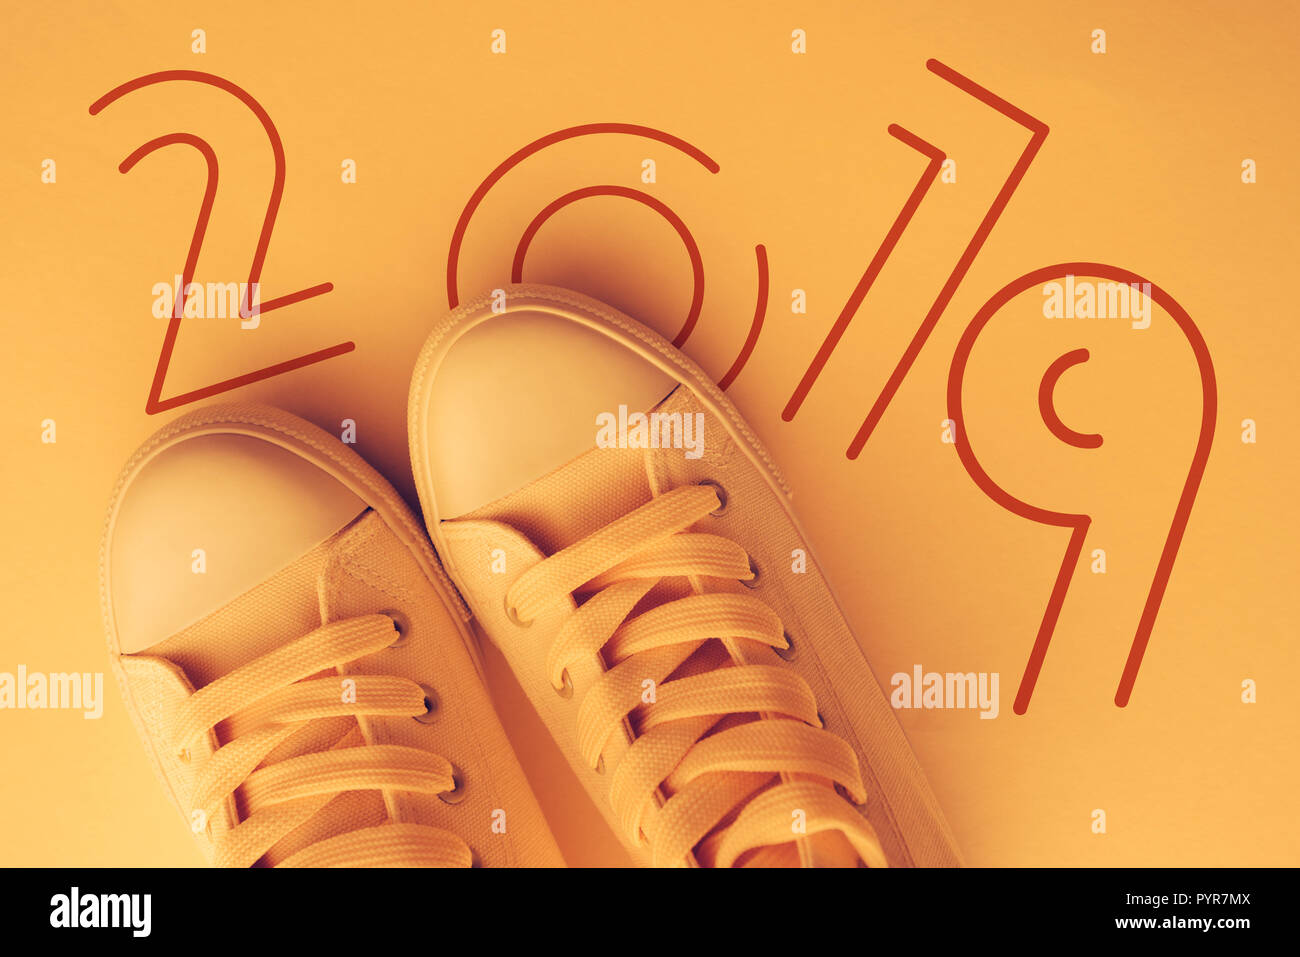 Bonne année 2019 à tous les jeunes, avec les jeunes de l'image conceptuelle moderne style sneakers d'en haut Banque D'Images